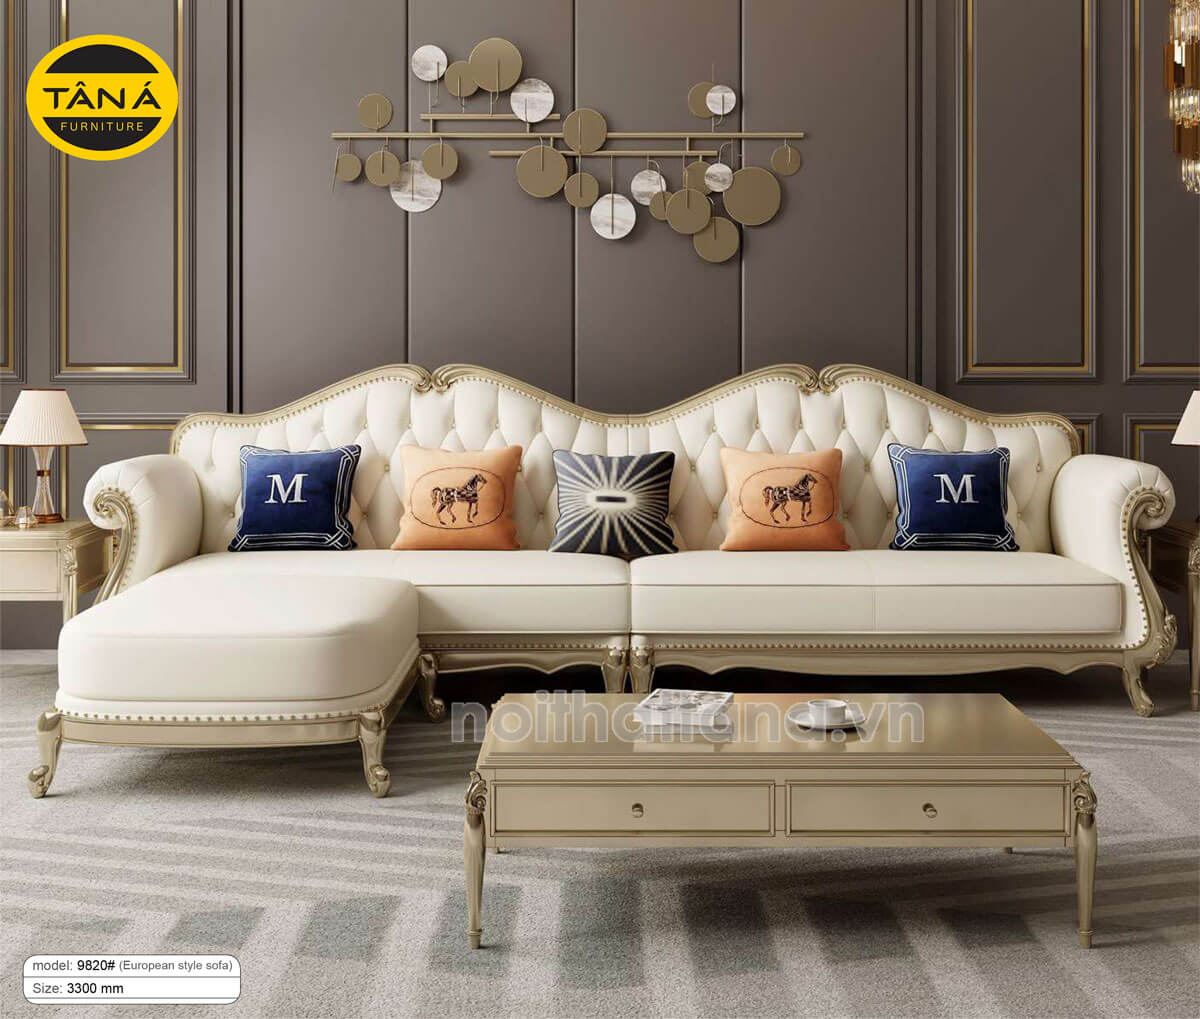 Kinh nghiệm chọn sofa phòng khách phong cách hiện đại và tân cổ điển